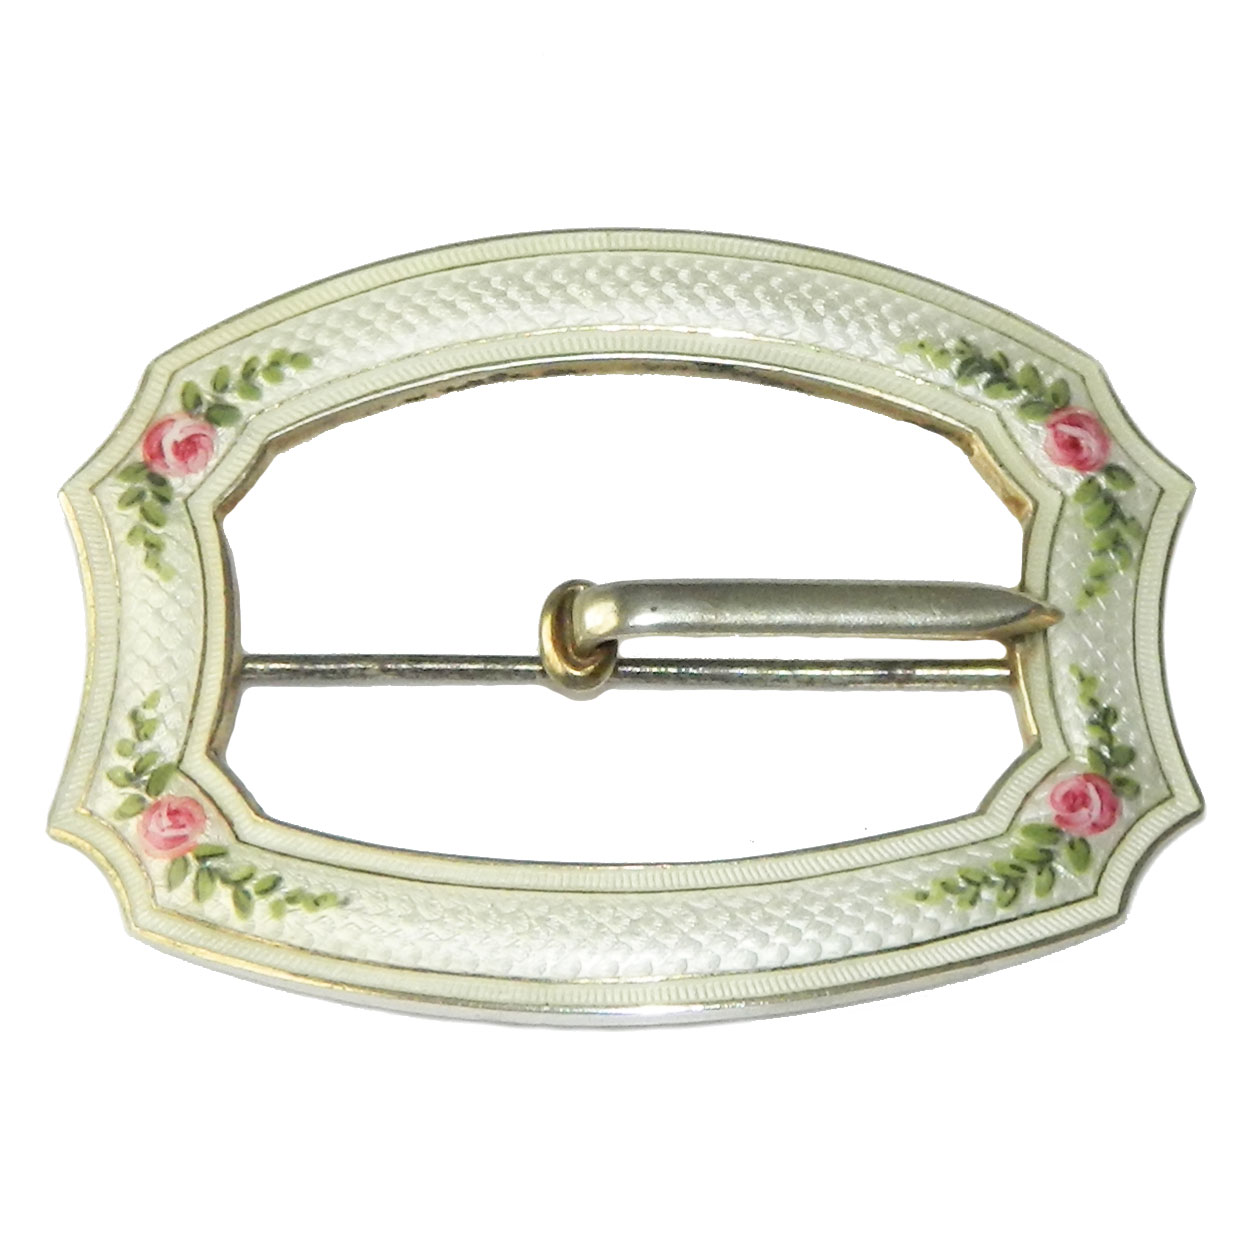 Sterling belt buckle brooch